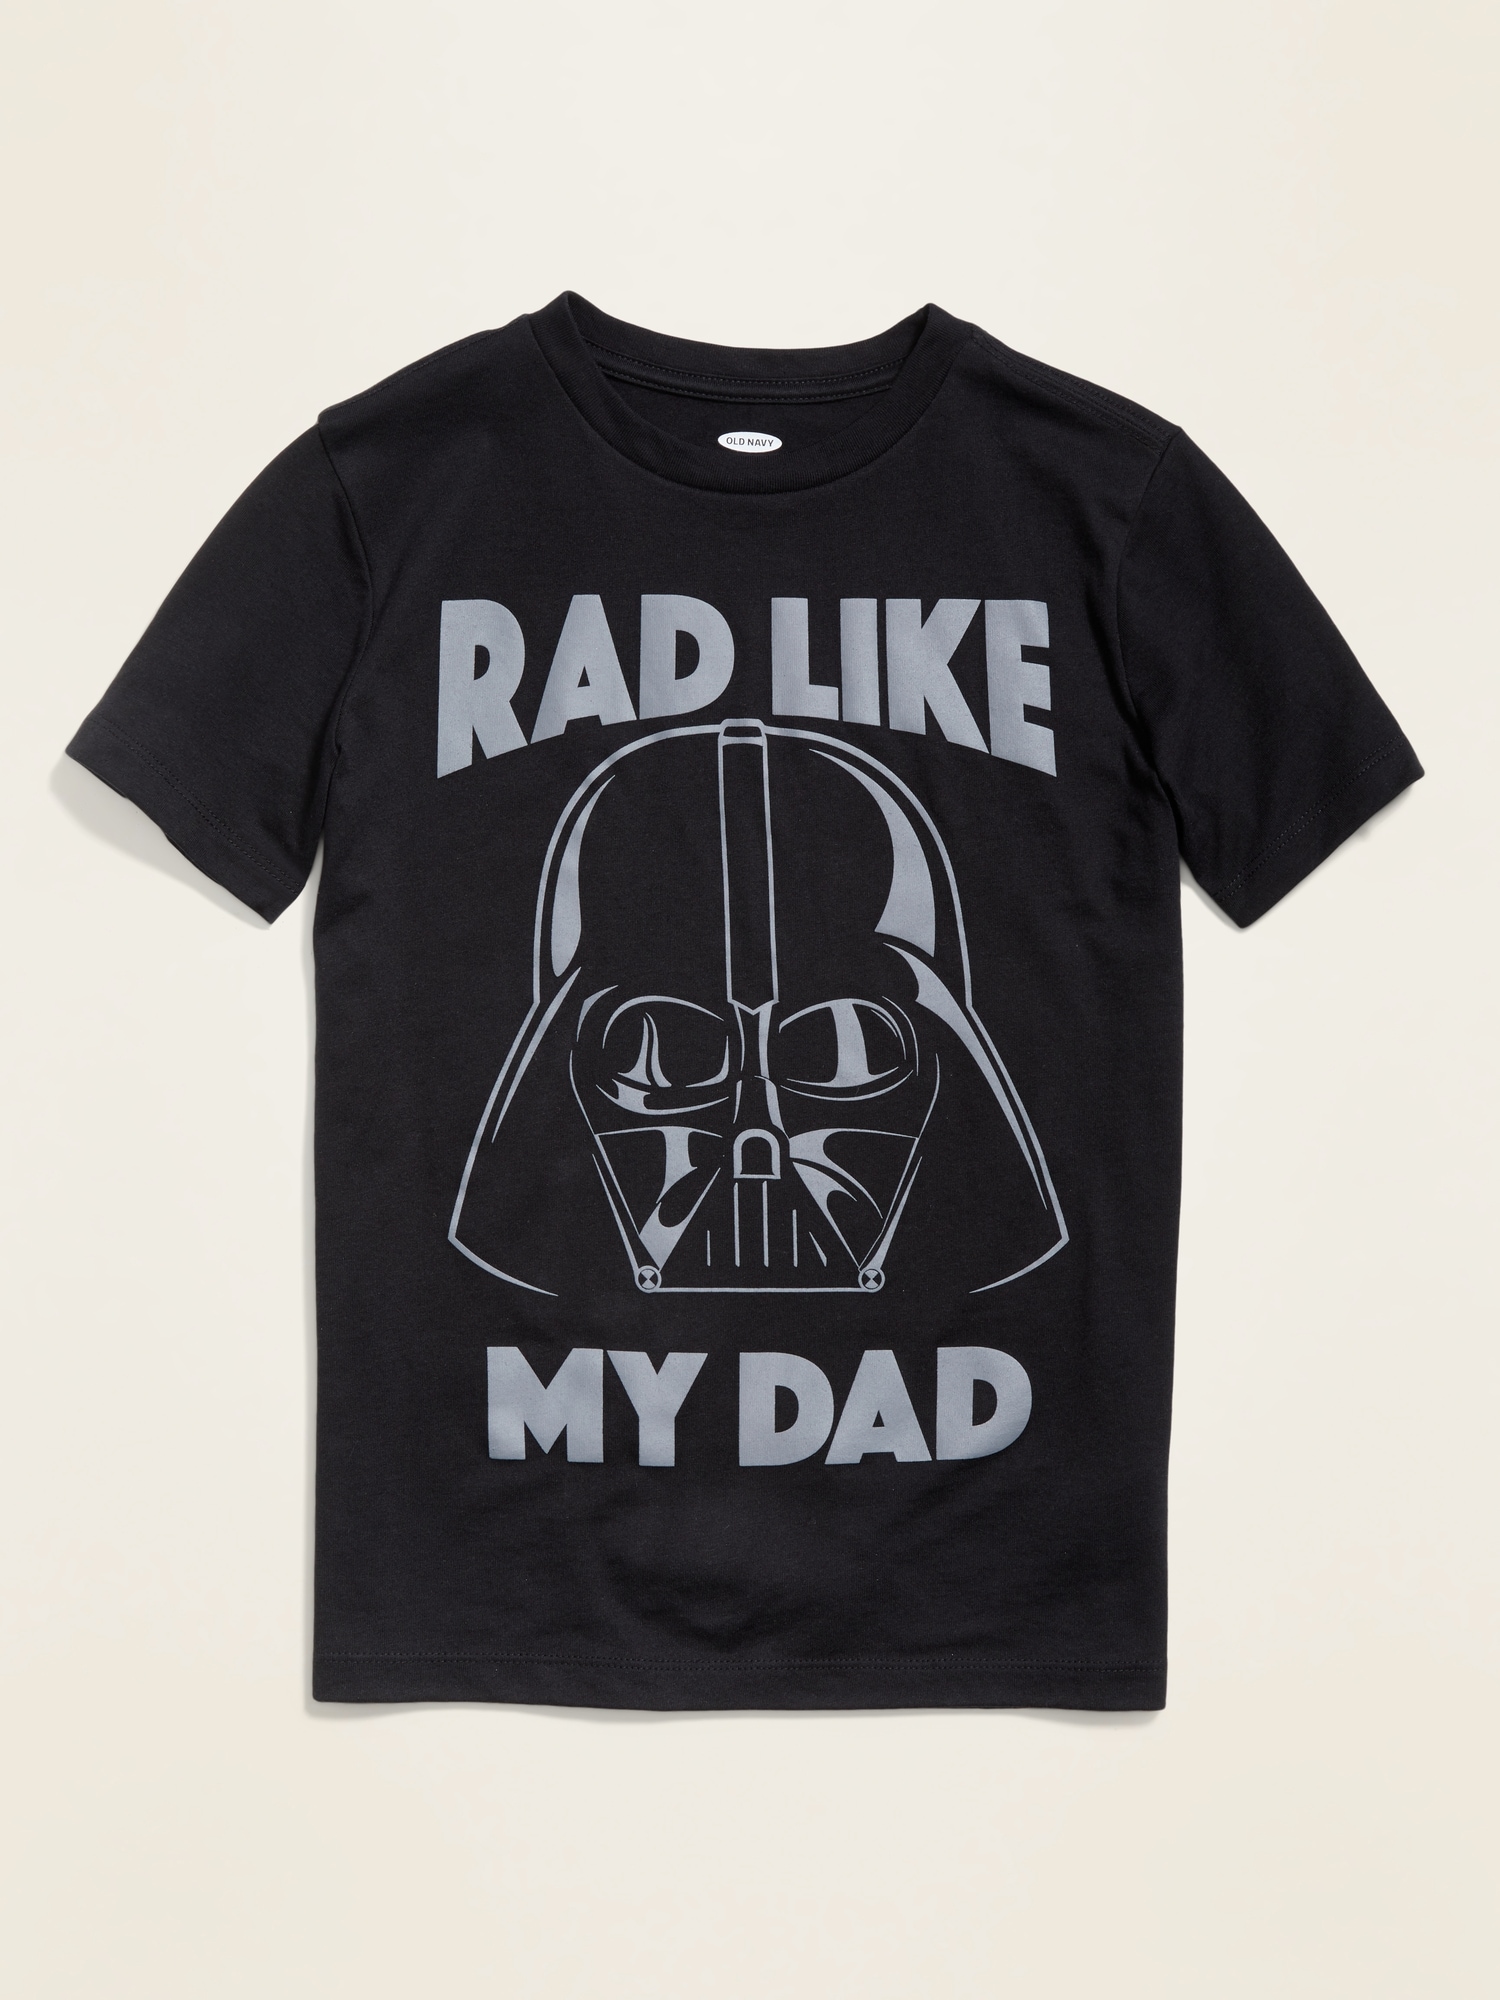 darth vader dad shirt